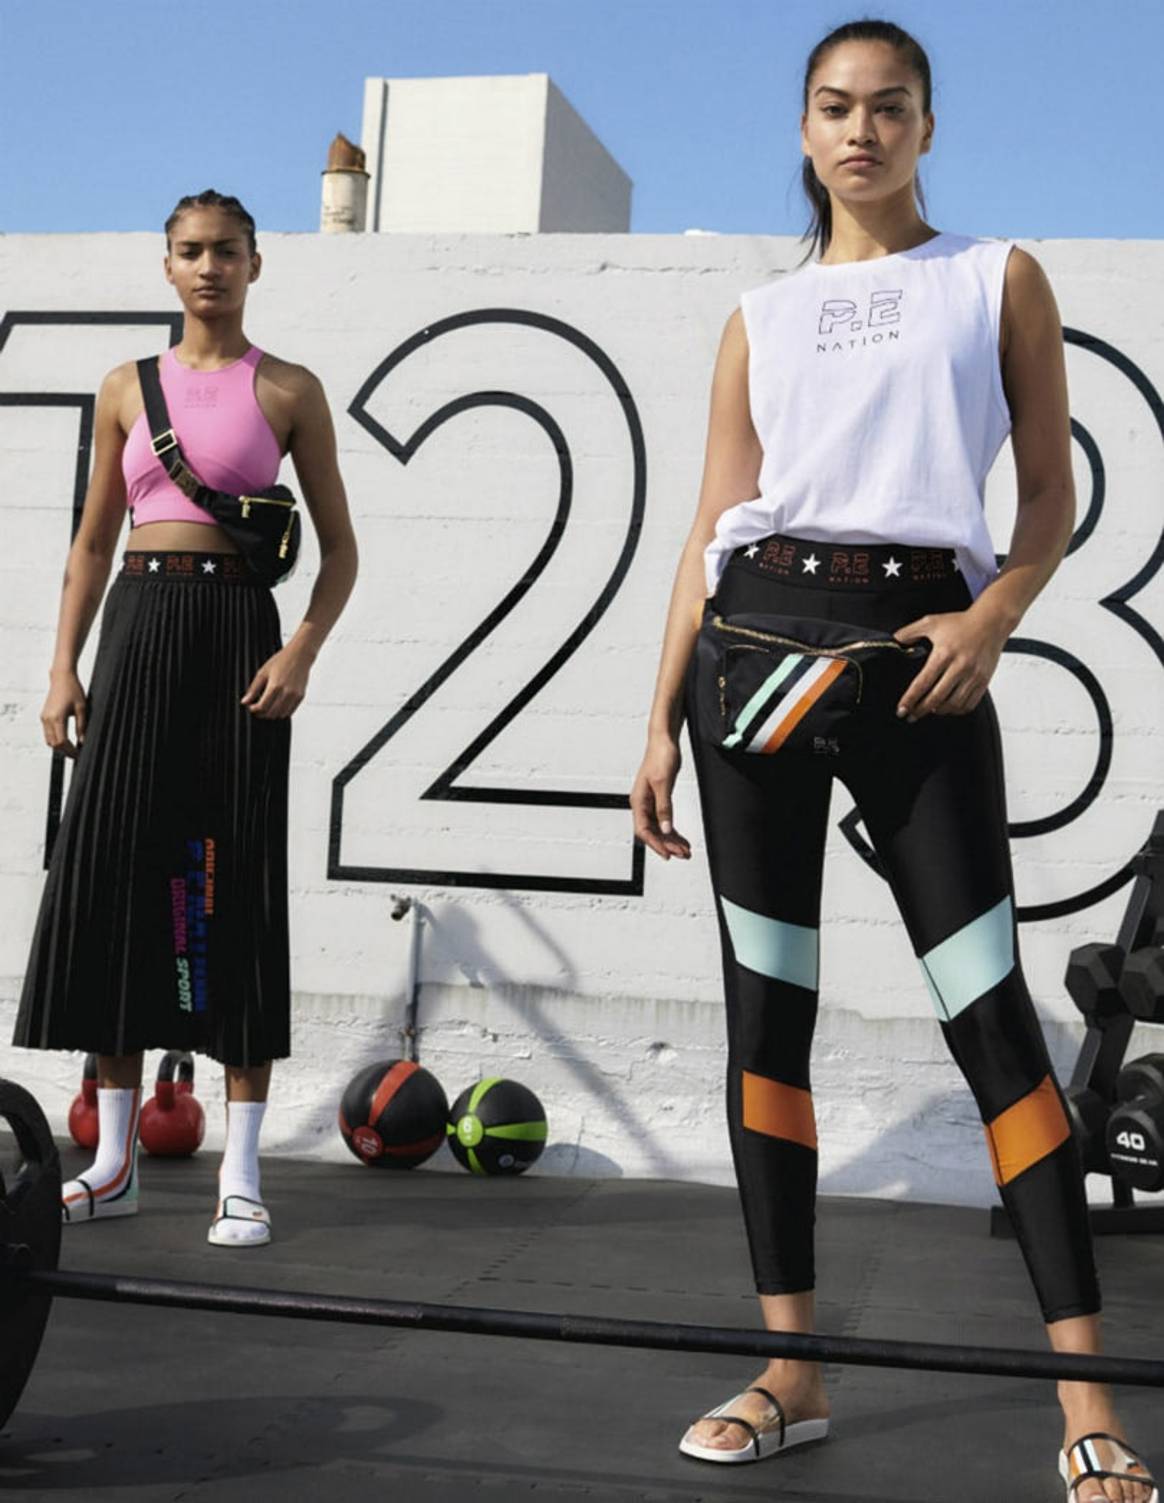 H&M e P.E Nation presentano la prima collaborazione athleisure